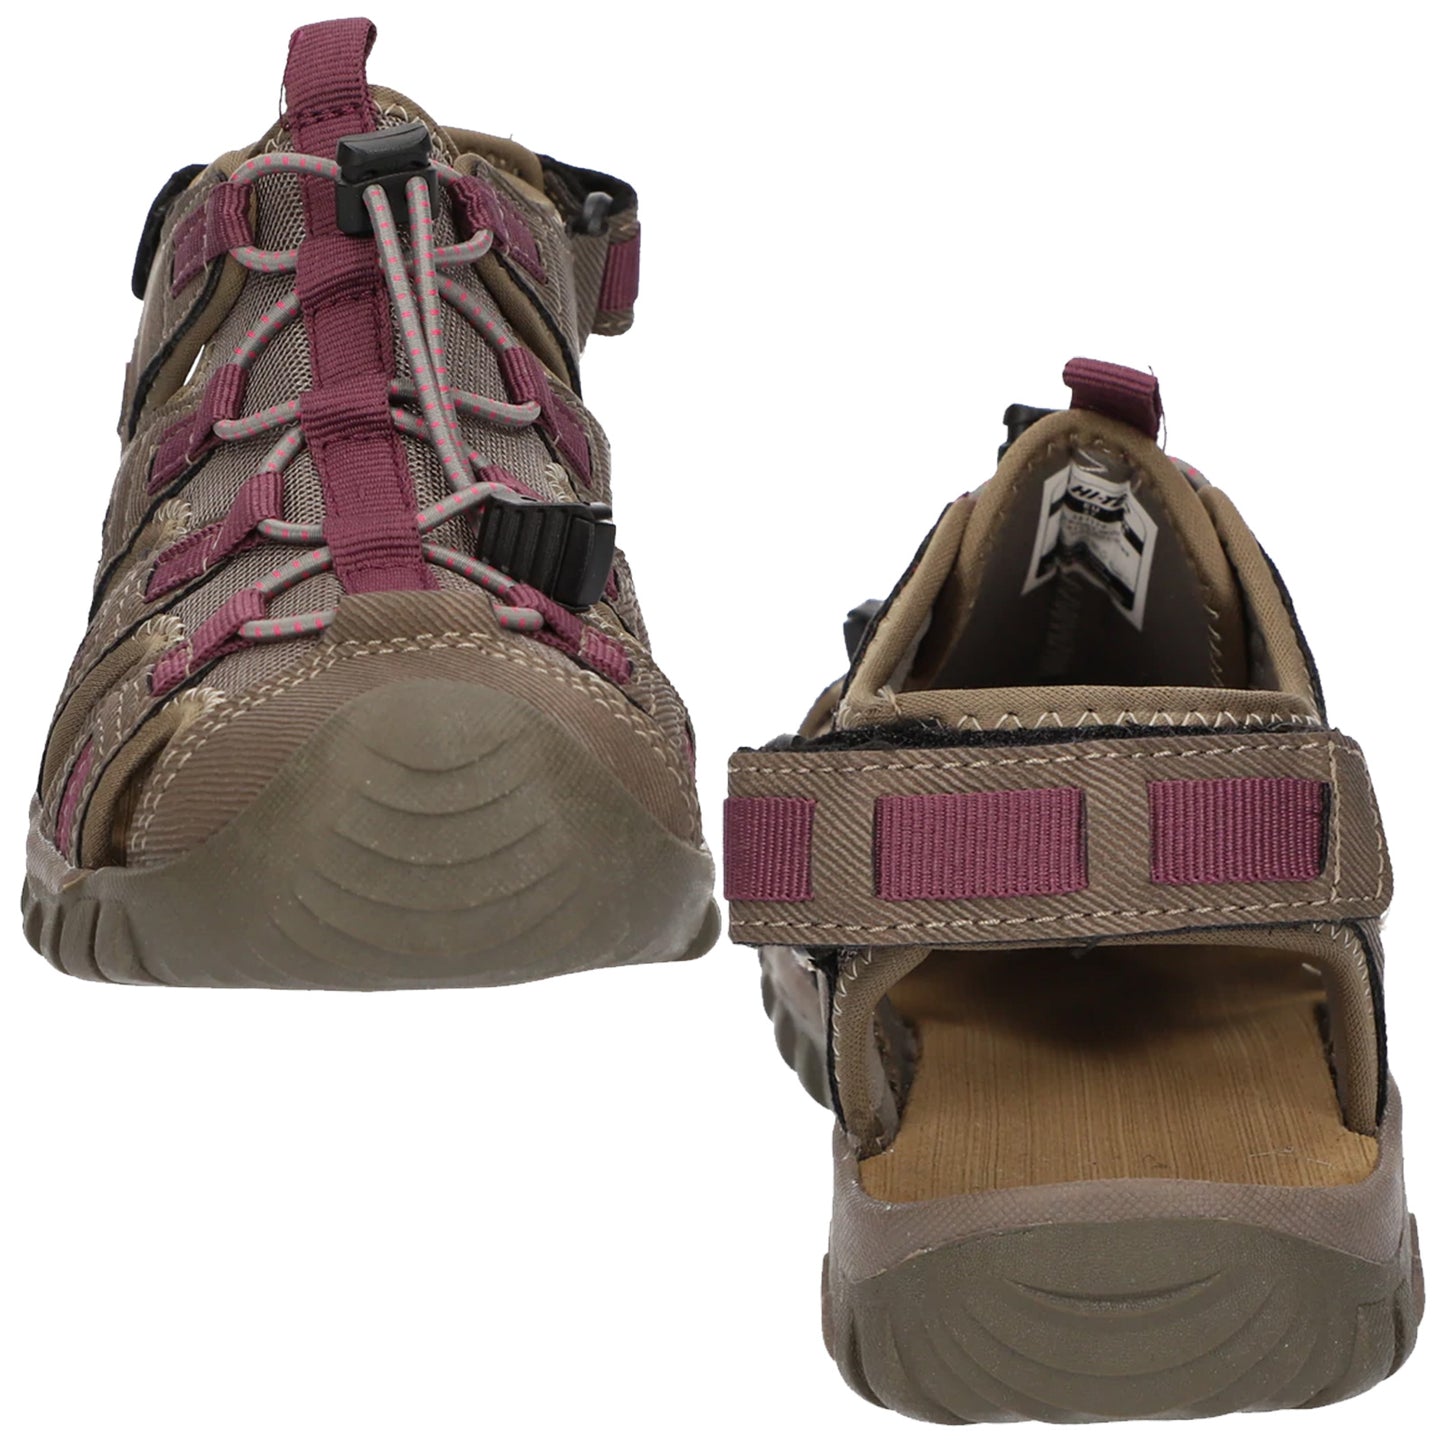 Hi-Tec Ladies Cove Sport Walking Sandals